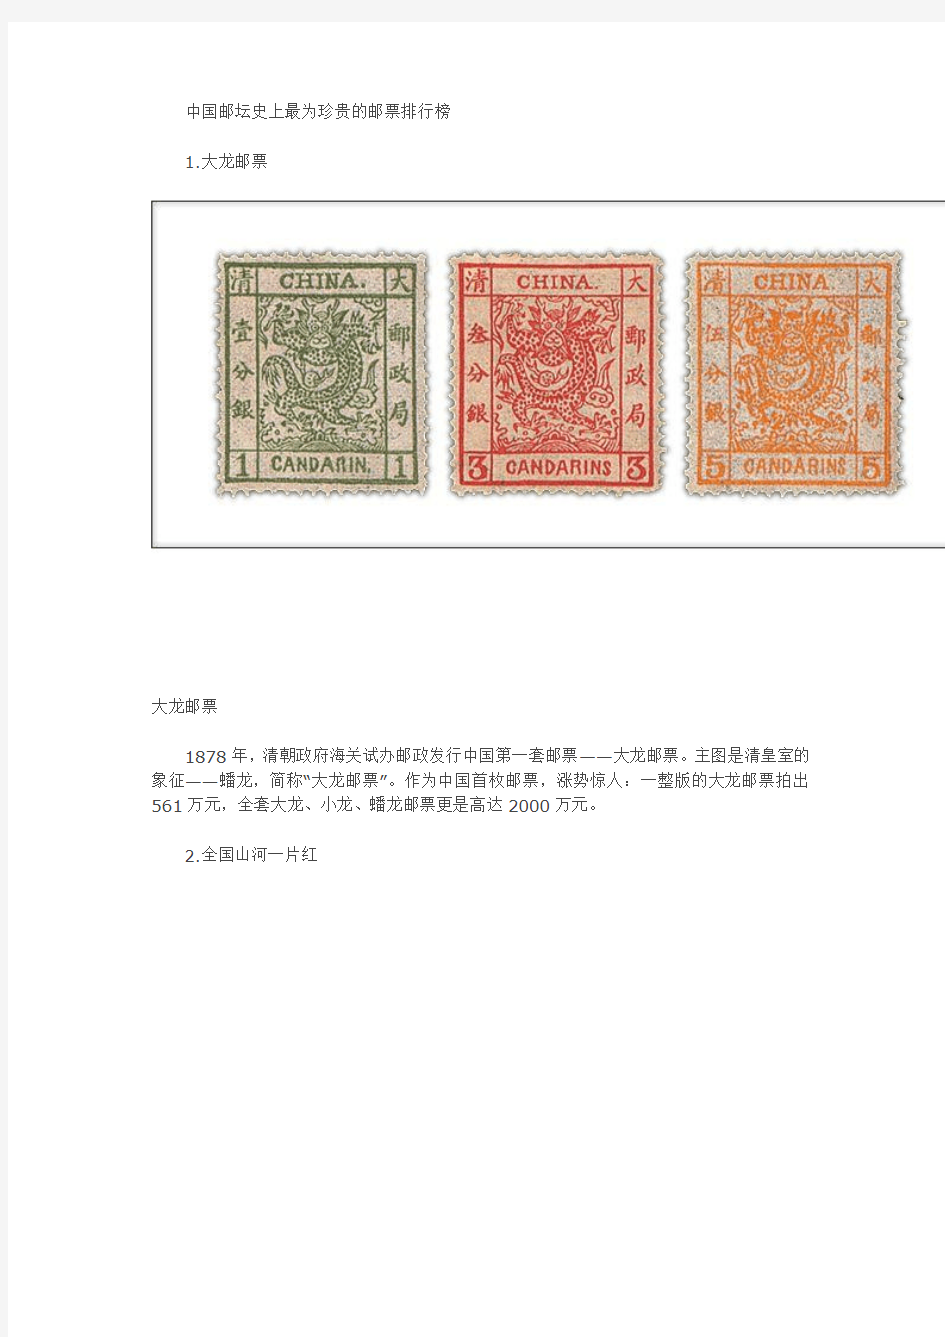 中国邮坛史上最为珍贵的五枚邮票